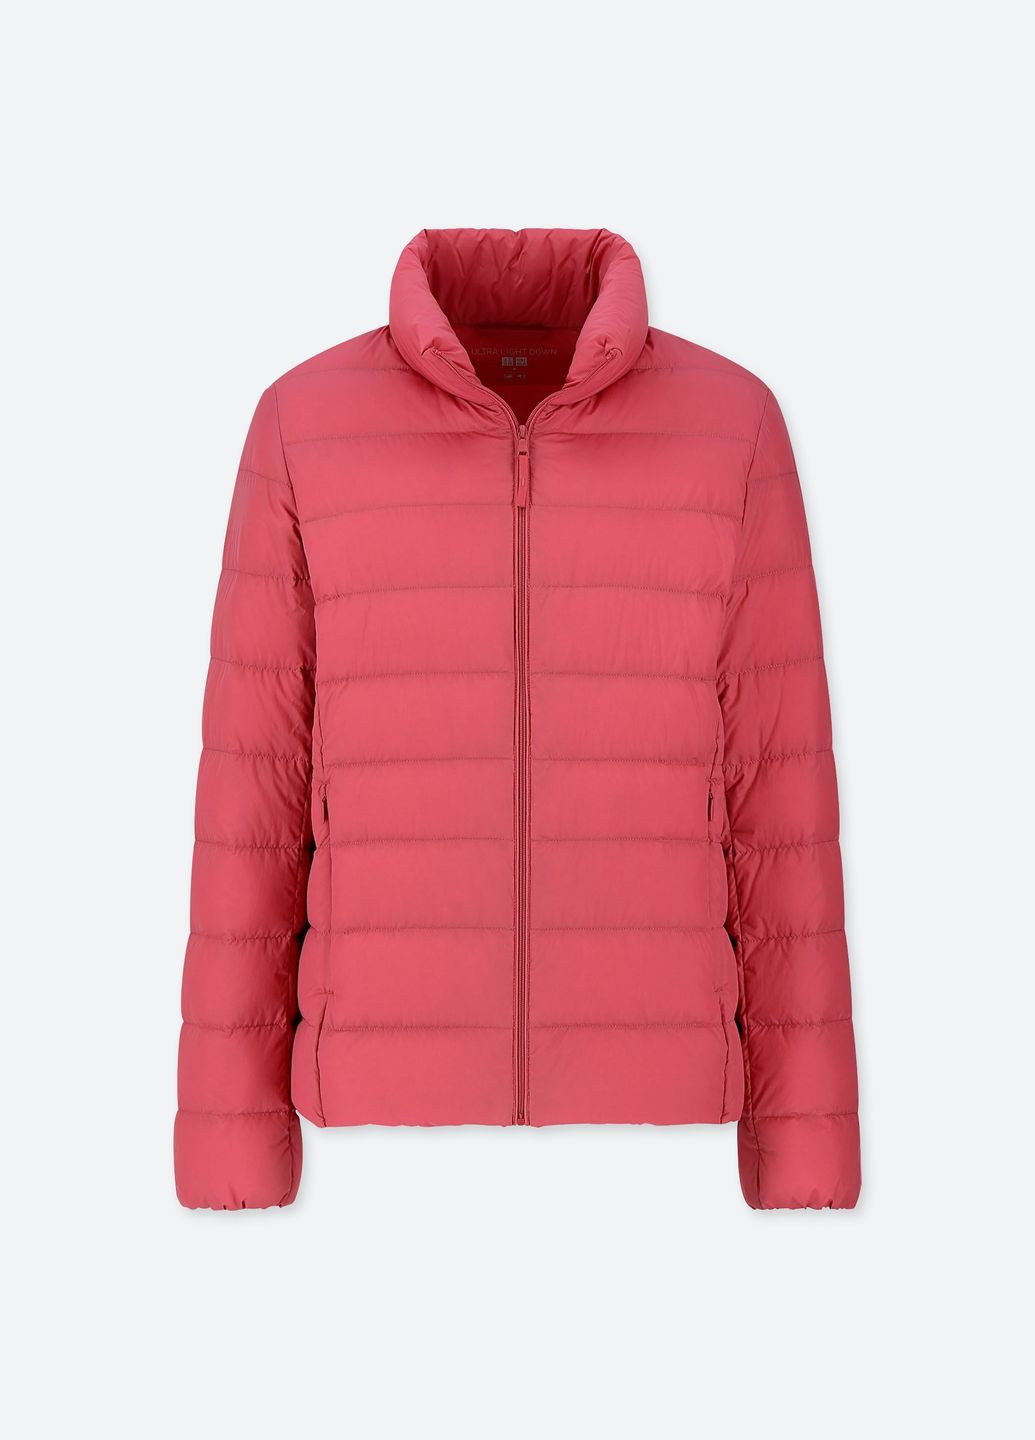 Темно-розовая демисезонная куртка демисезонная - женская куртка uq0323w Uniqlo